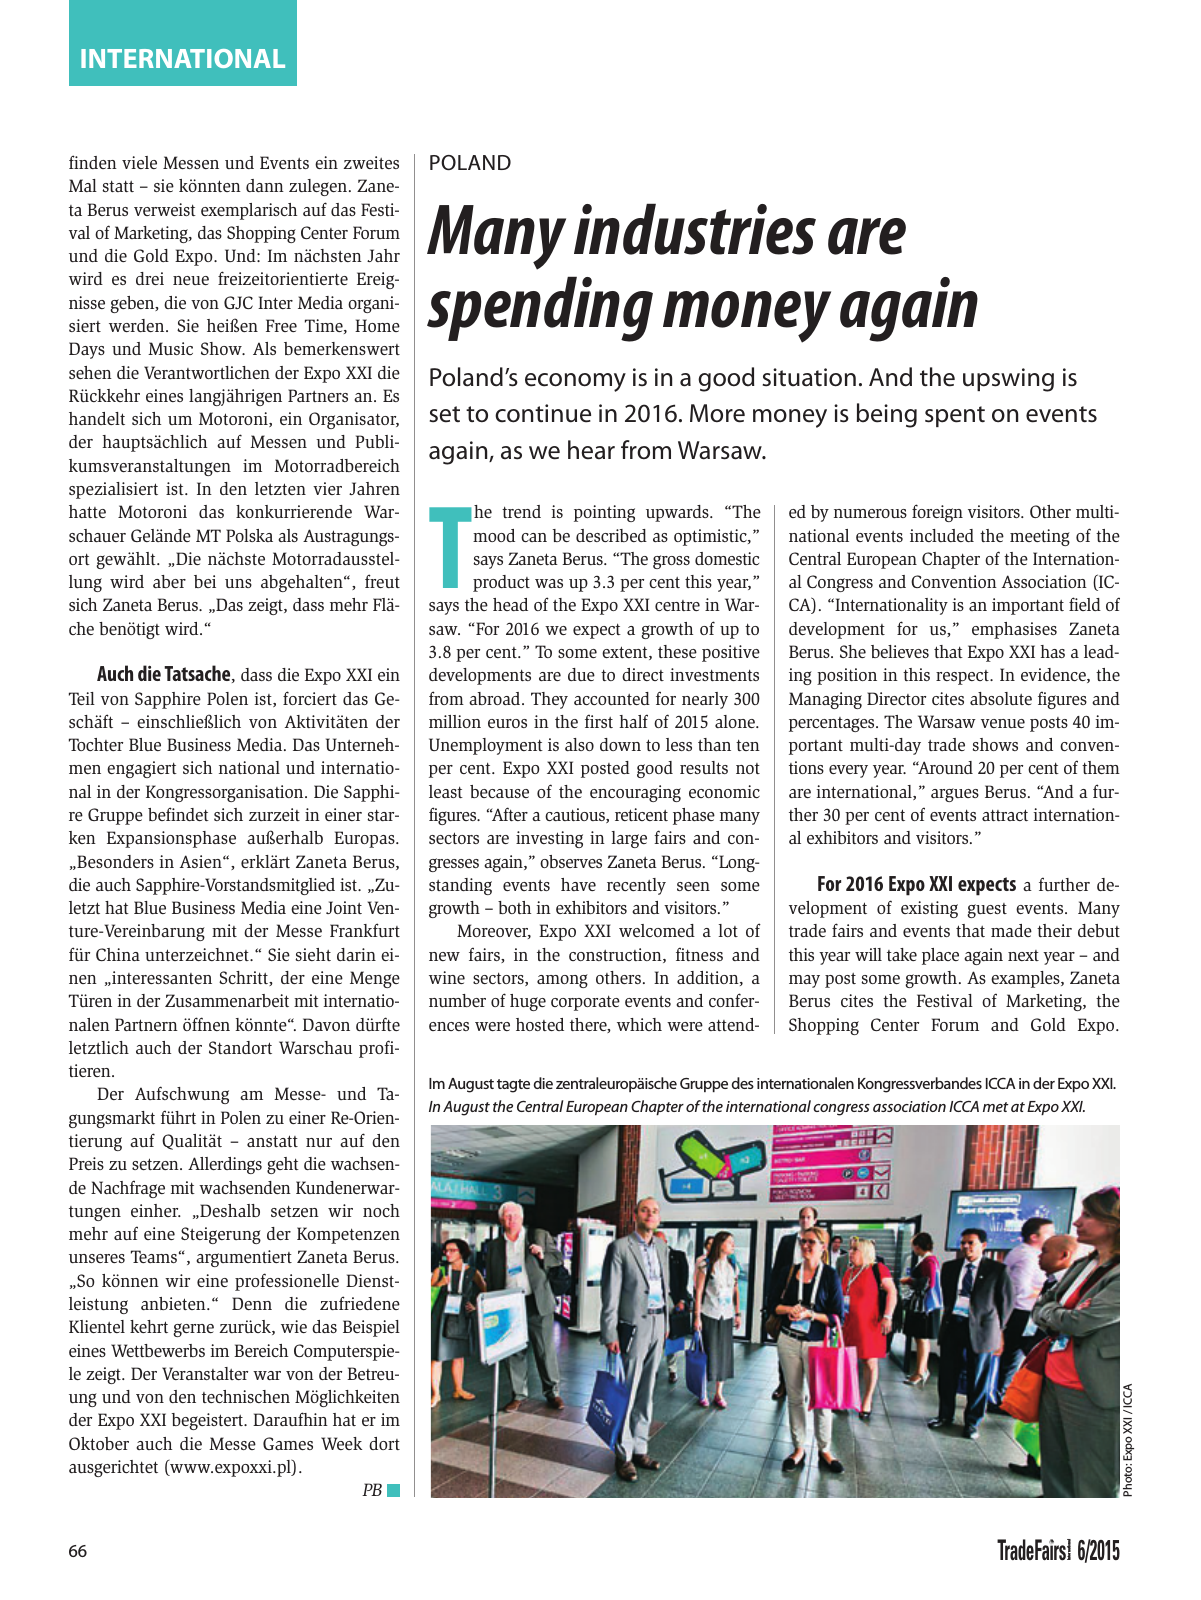 Vorschau TFI Trade-Fairs-International 06/2015 Seite 66